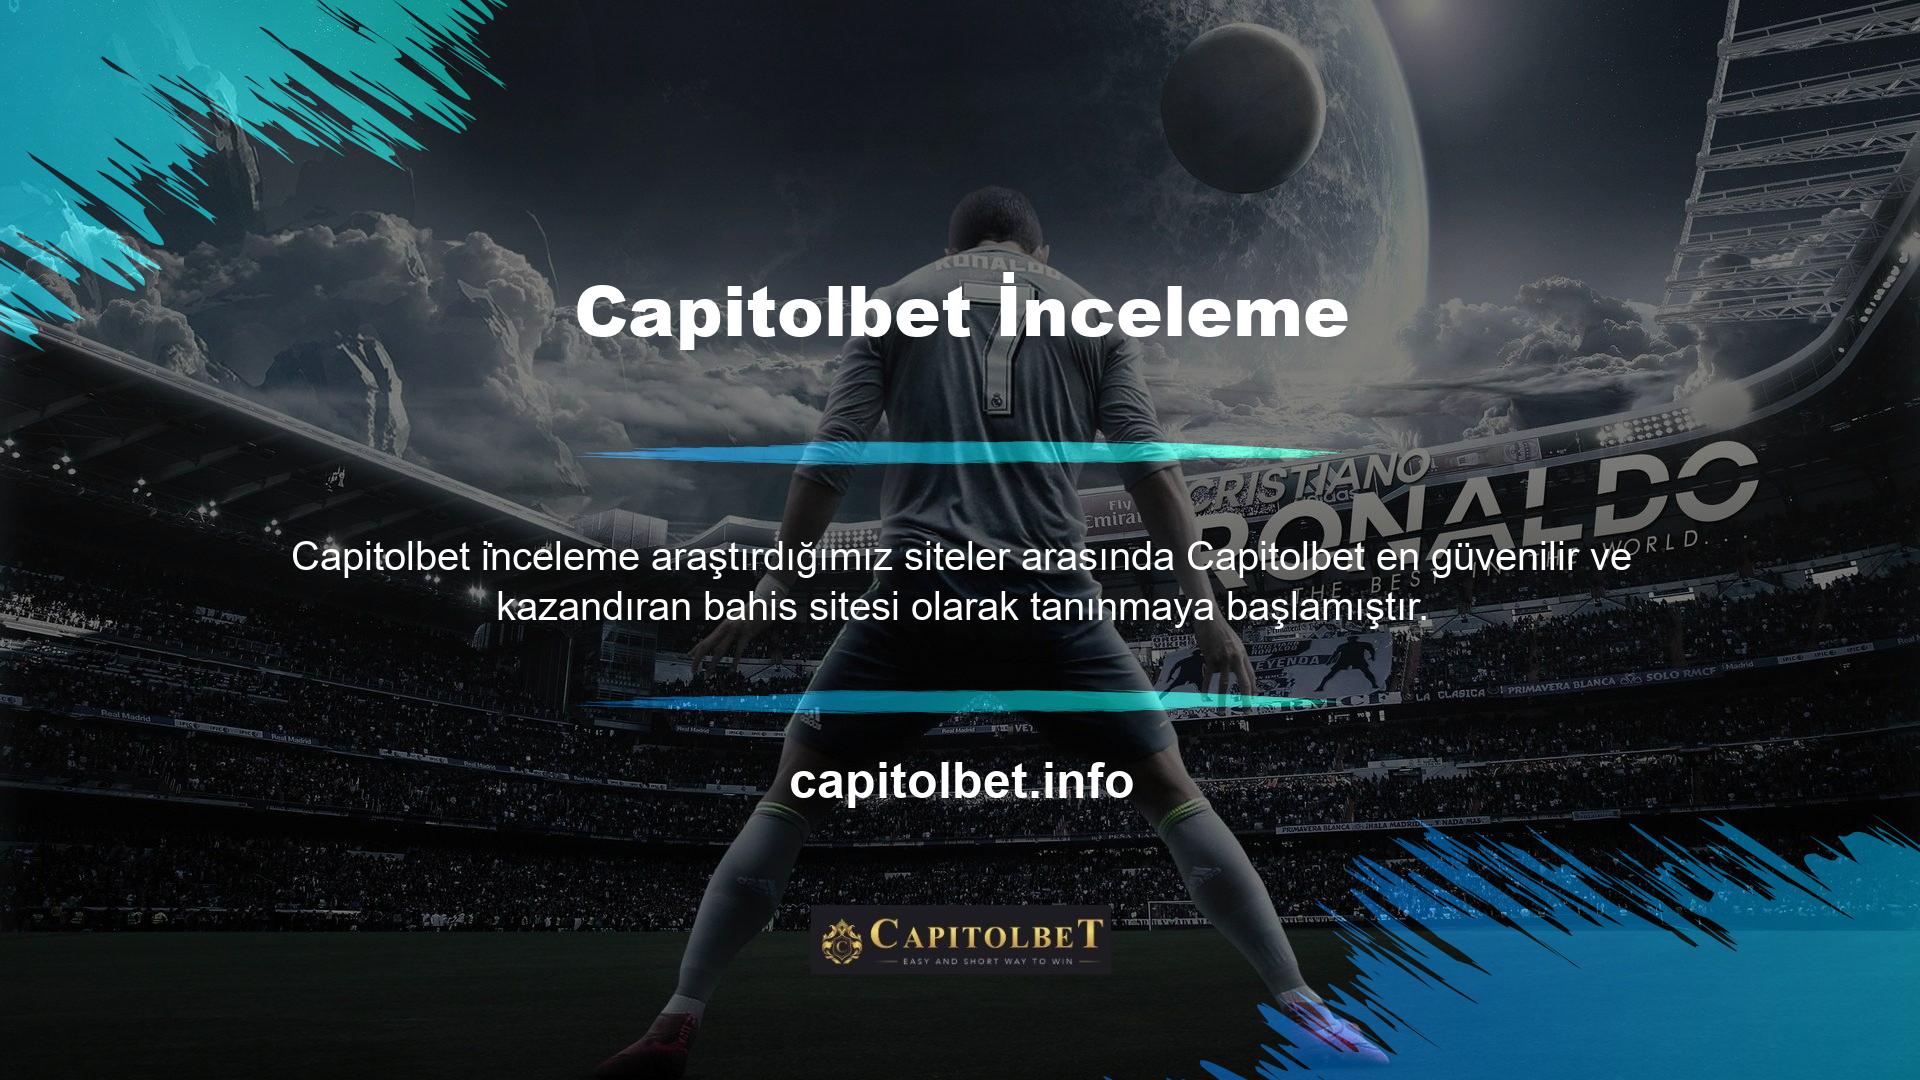 Capitolbet, kullanıcılarını yorum yaparak memnun edebilen ender sitelerden biri olarak da biliniyor